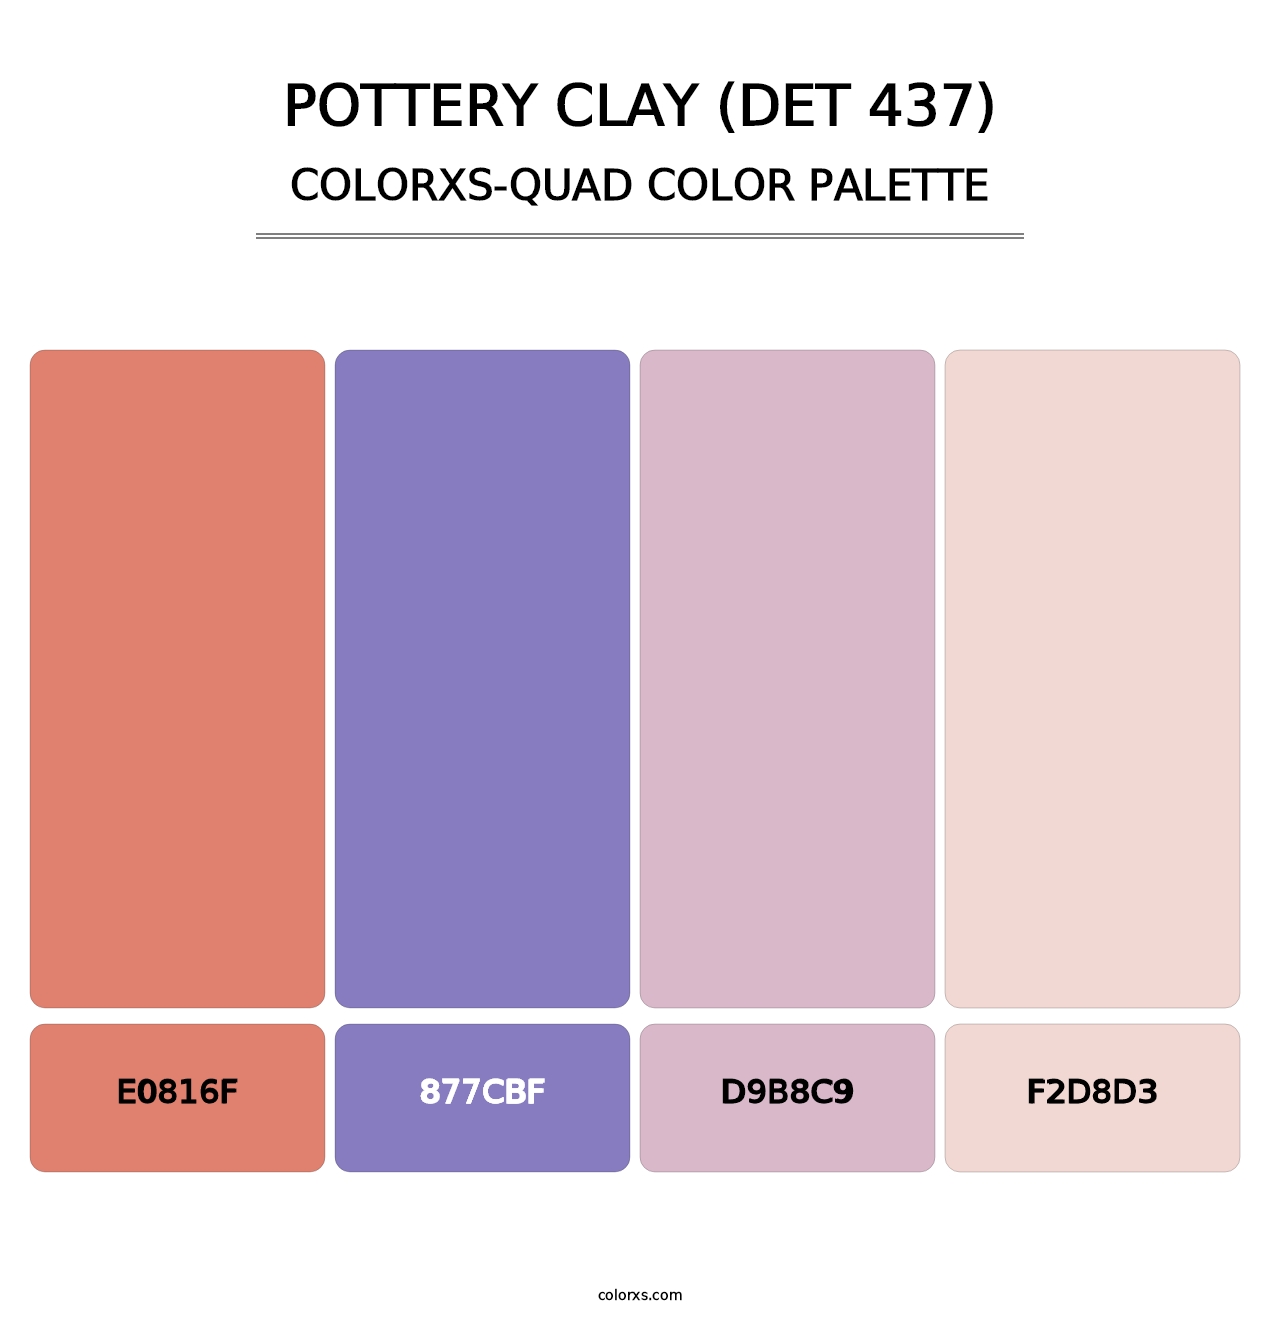 Pottery Clay (DET 437) - Colorxs Quad Palette